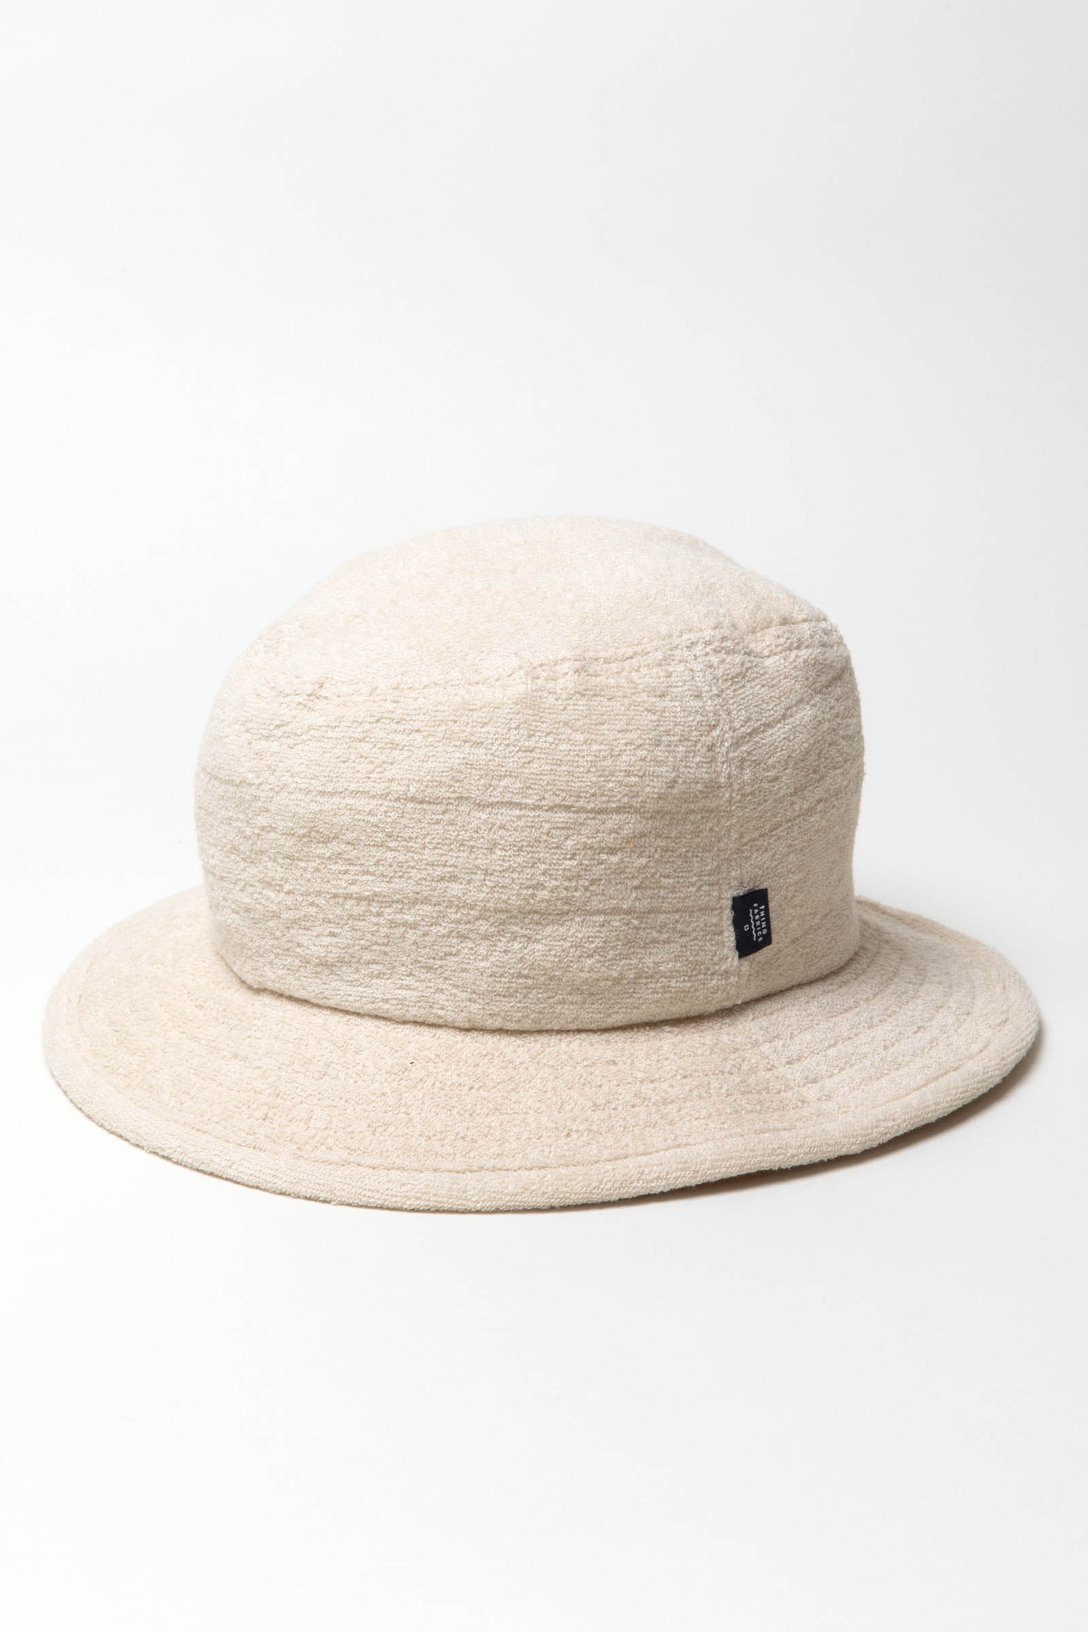 パイル地の帽子